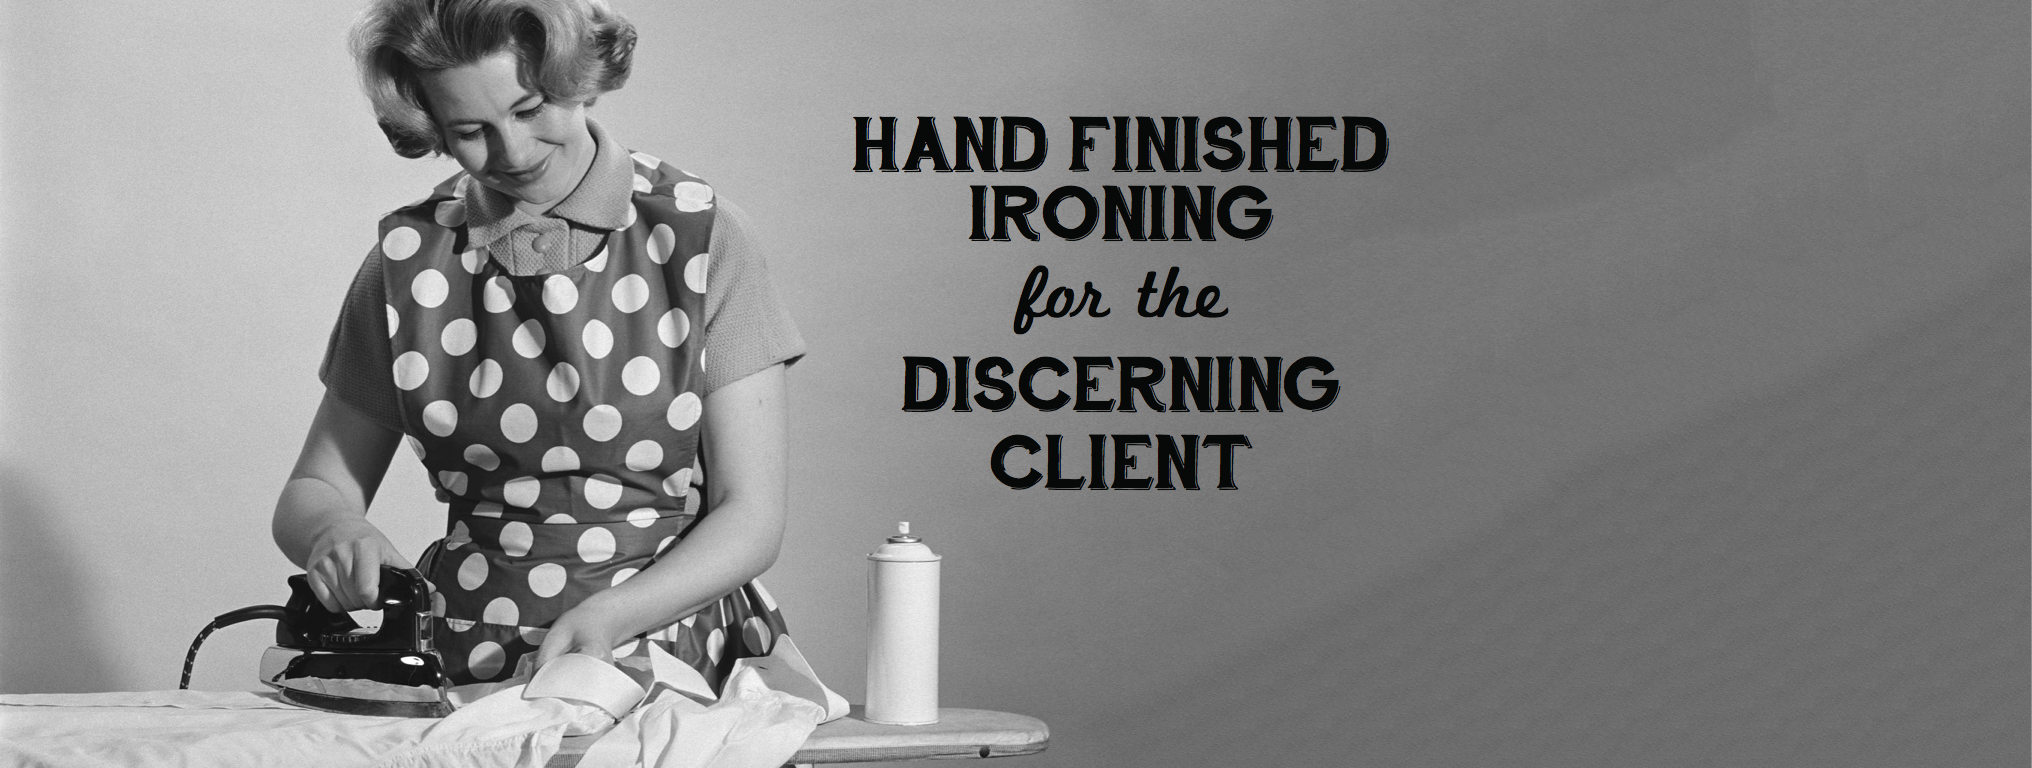 Hand Finished Ironing